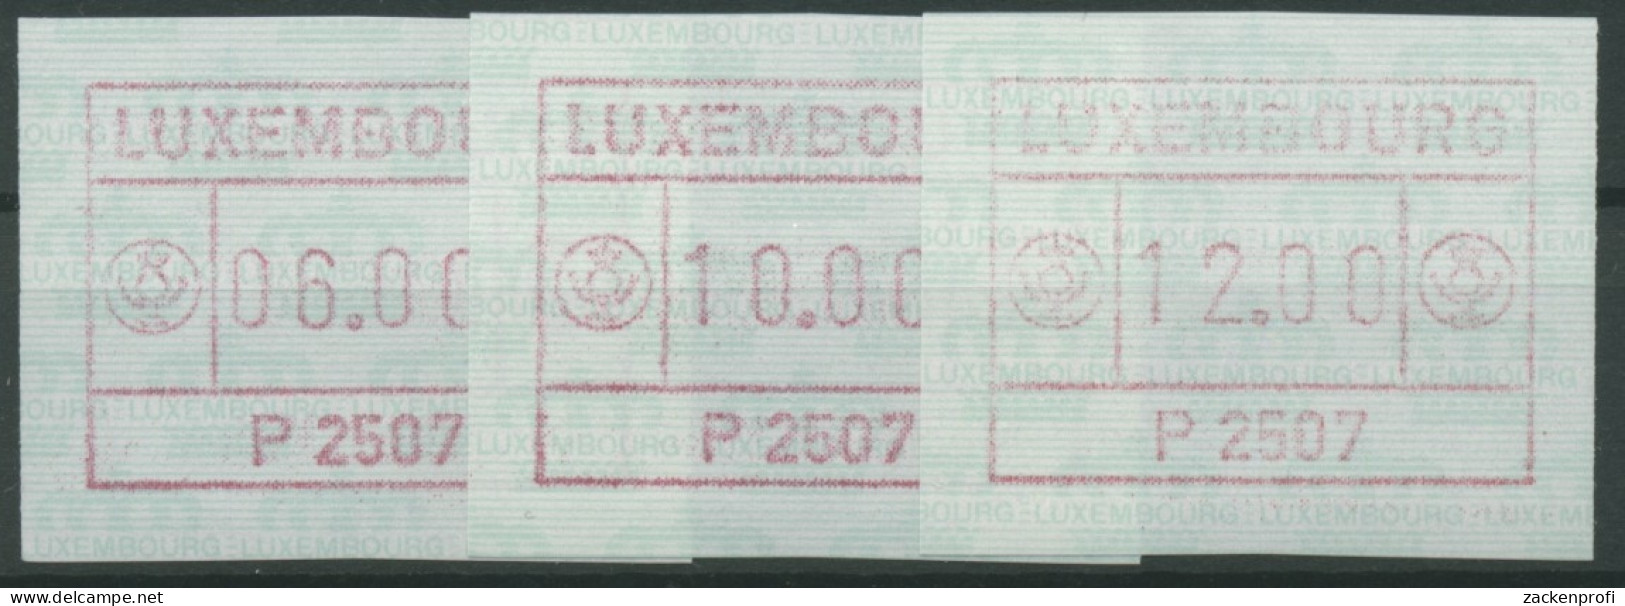 Luxemburg 1983 Automatenmarke 1 Satz 3 Werte Automat P2507 Postfrisch - Frankeervignetten